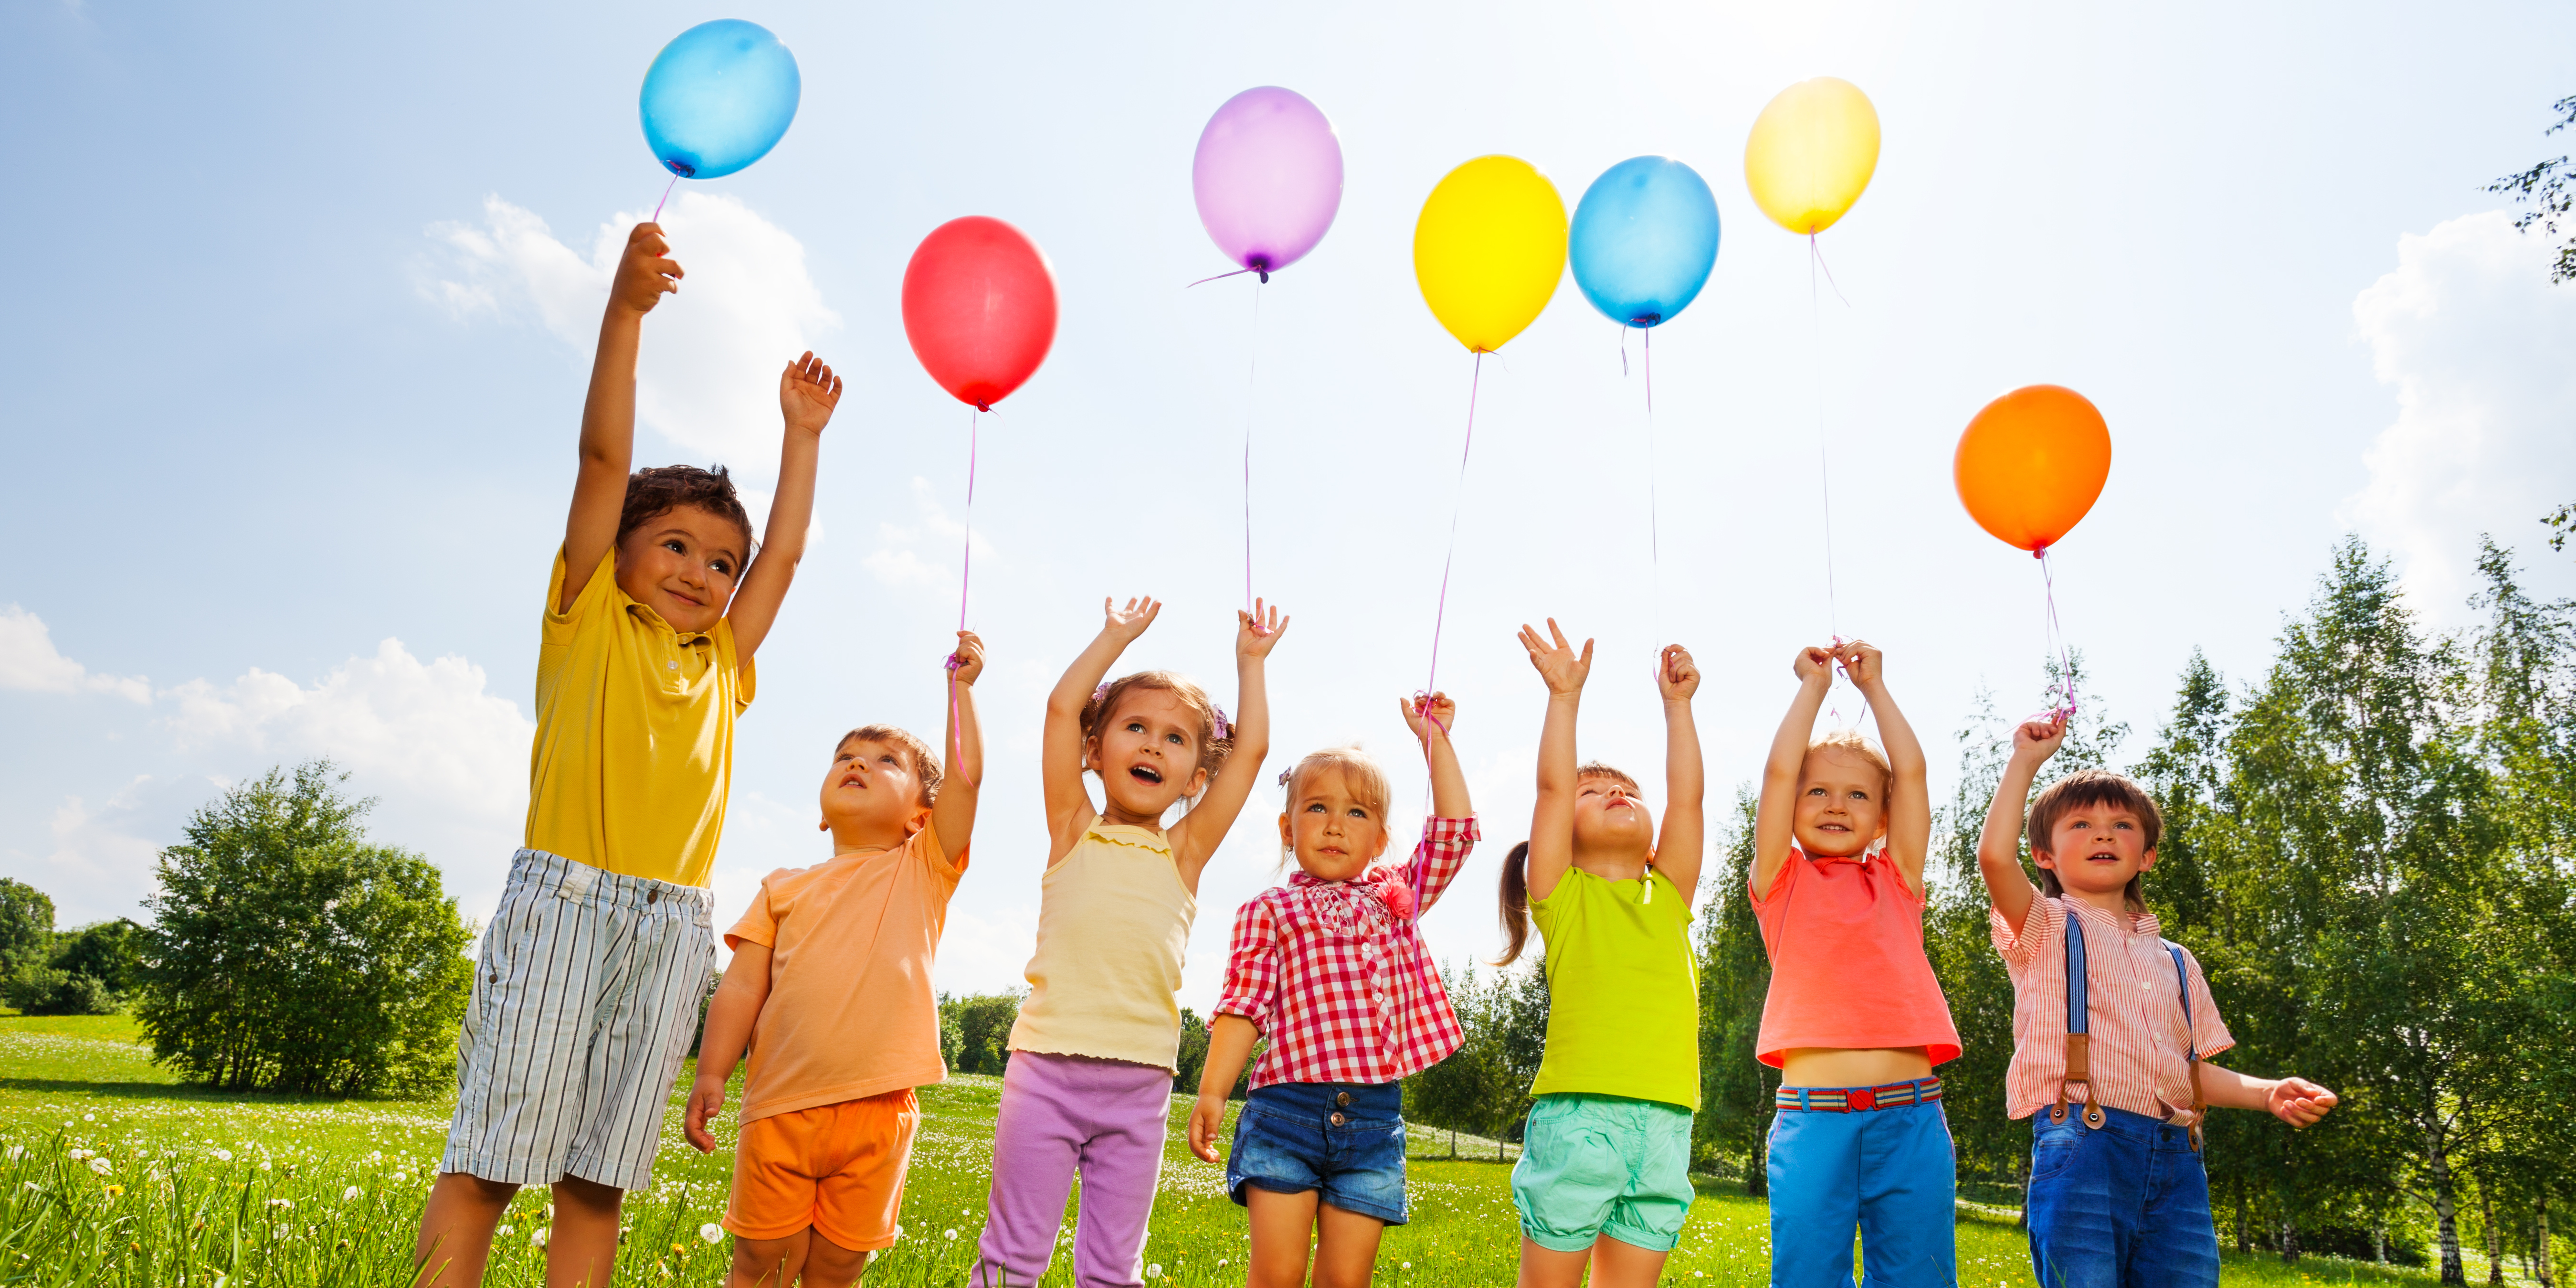 Сегодня 1 июня. С днем защиты детей. 1 Июня Международный день защиты детей. Летние мероприятия. Дети с шариками.